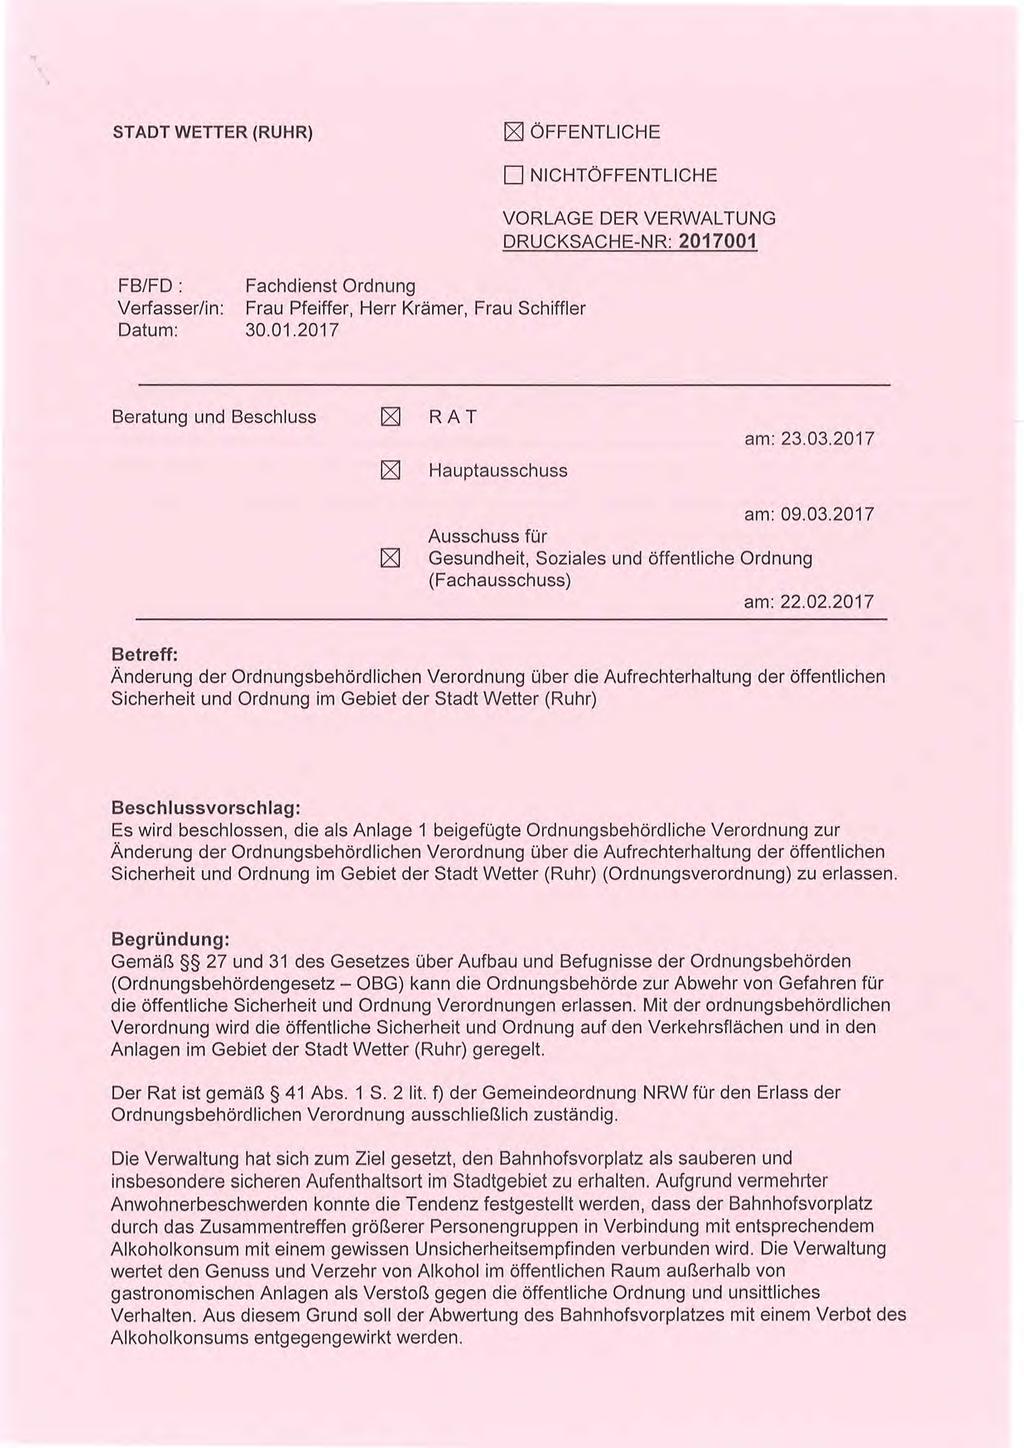 STADT WETTER (RUHR) E ÖFFENTLICHE FB/FD : Fachdienst Ordnung Verfasser/in: Frau Pfeiffer, Herr Krämer, Frau Schiffler Datum: 30.01.